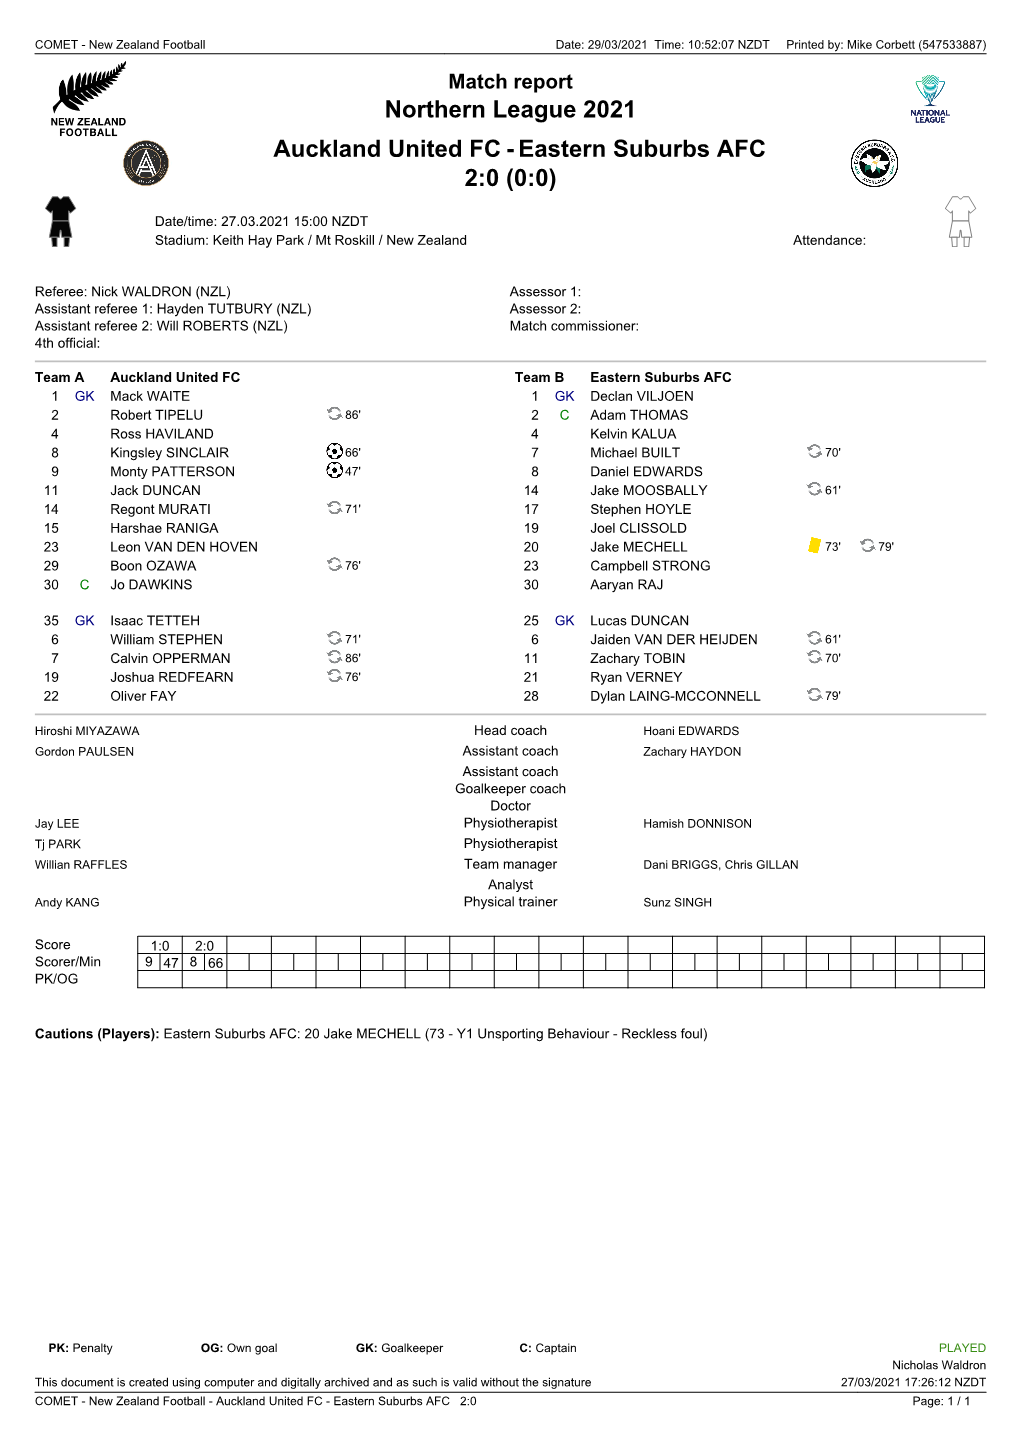 Eastern Suburbs AFC 2:0 (0:0)